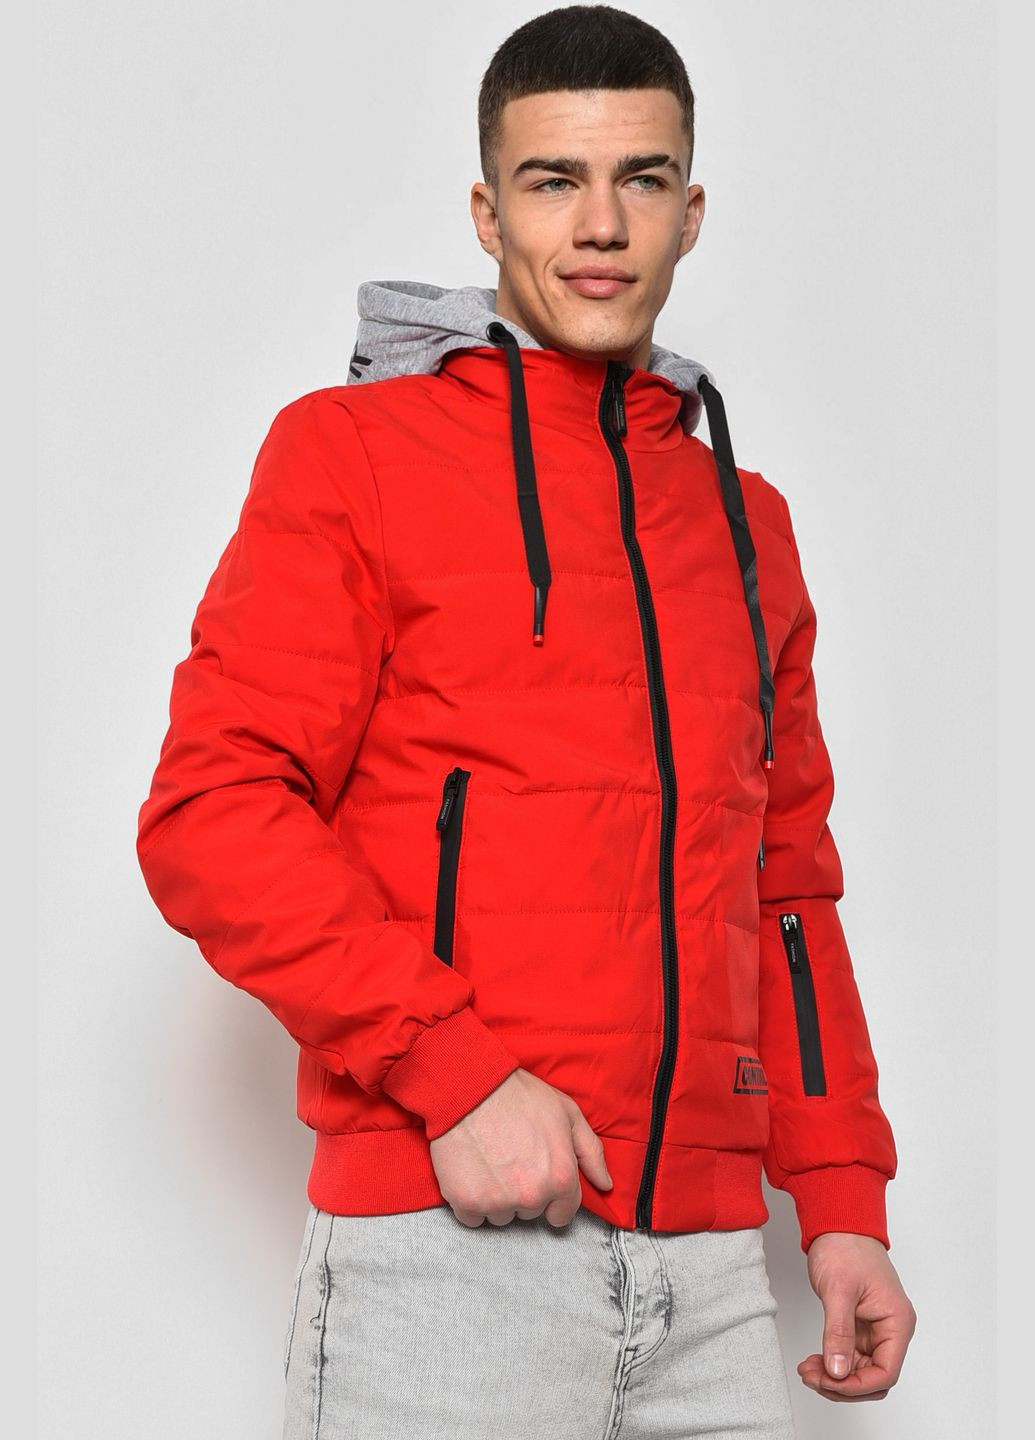 Красная демисезонная куртка мужская демисезонная красного цвета Let's Shop